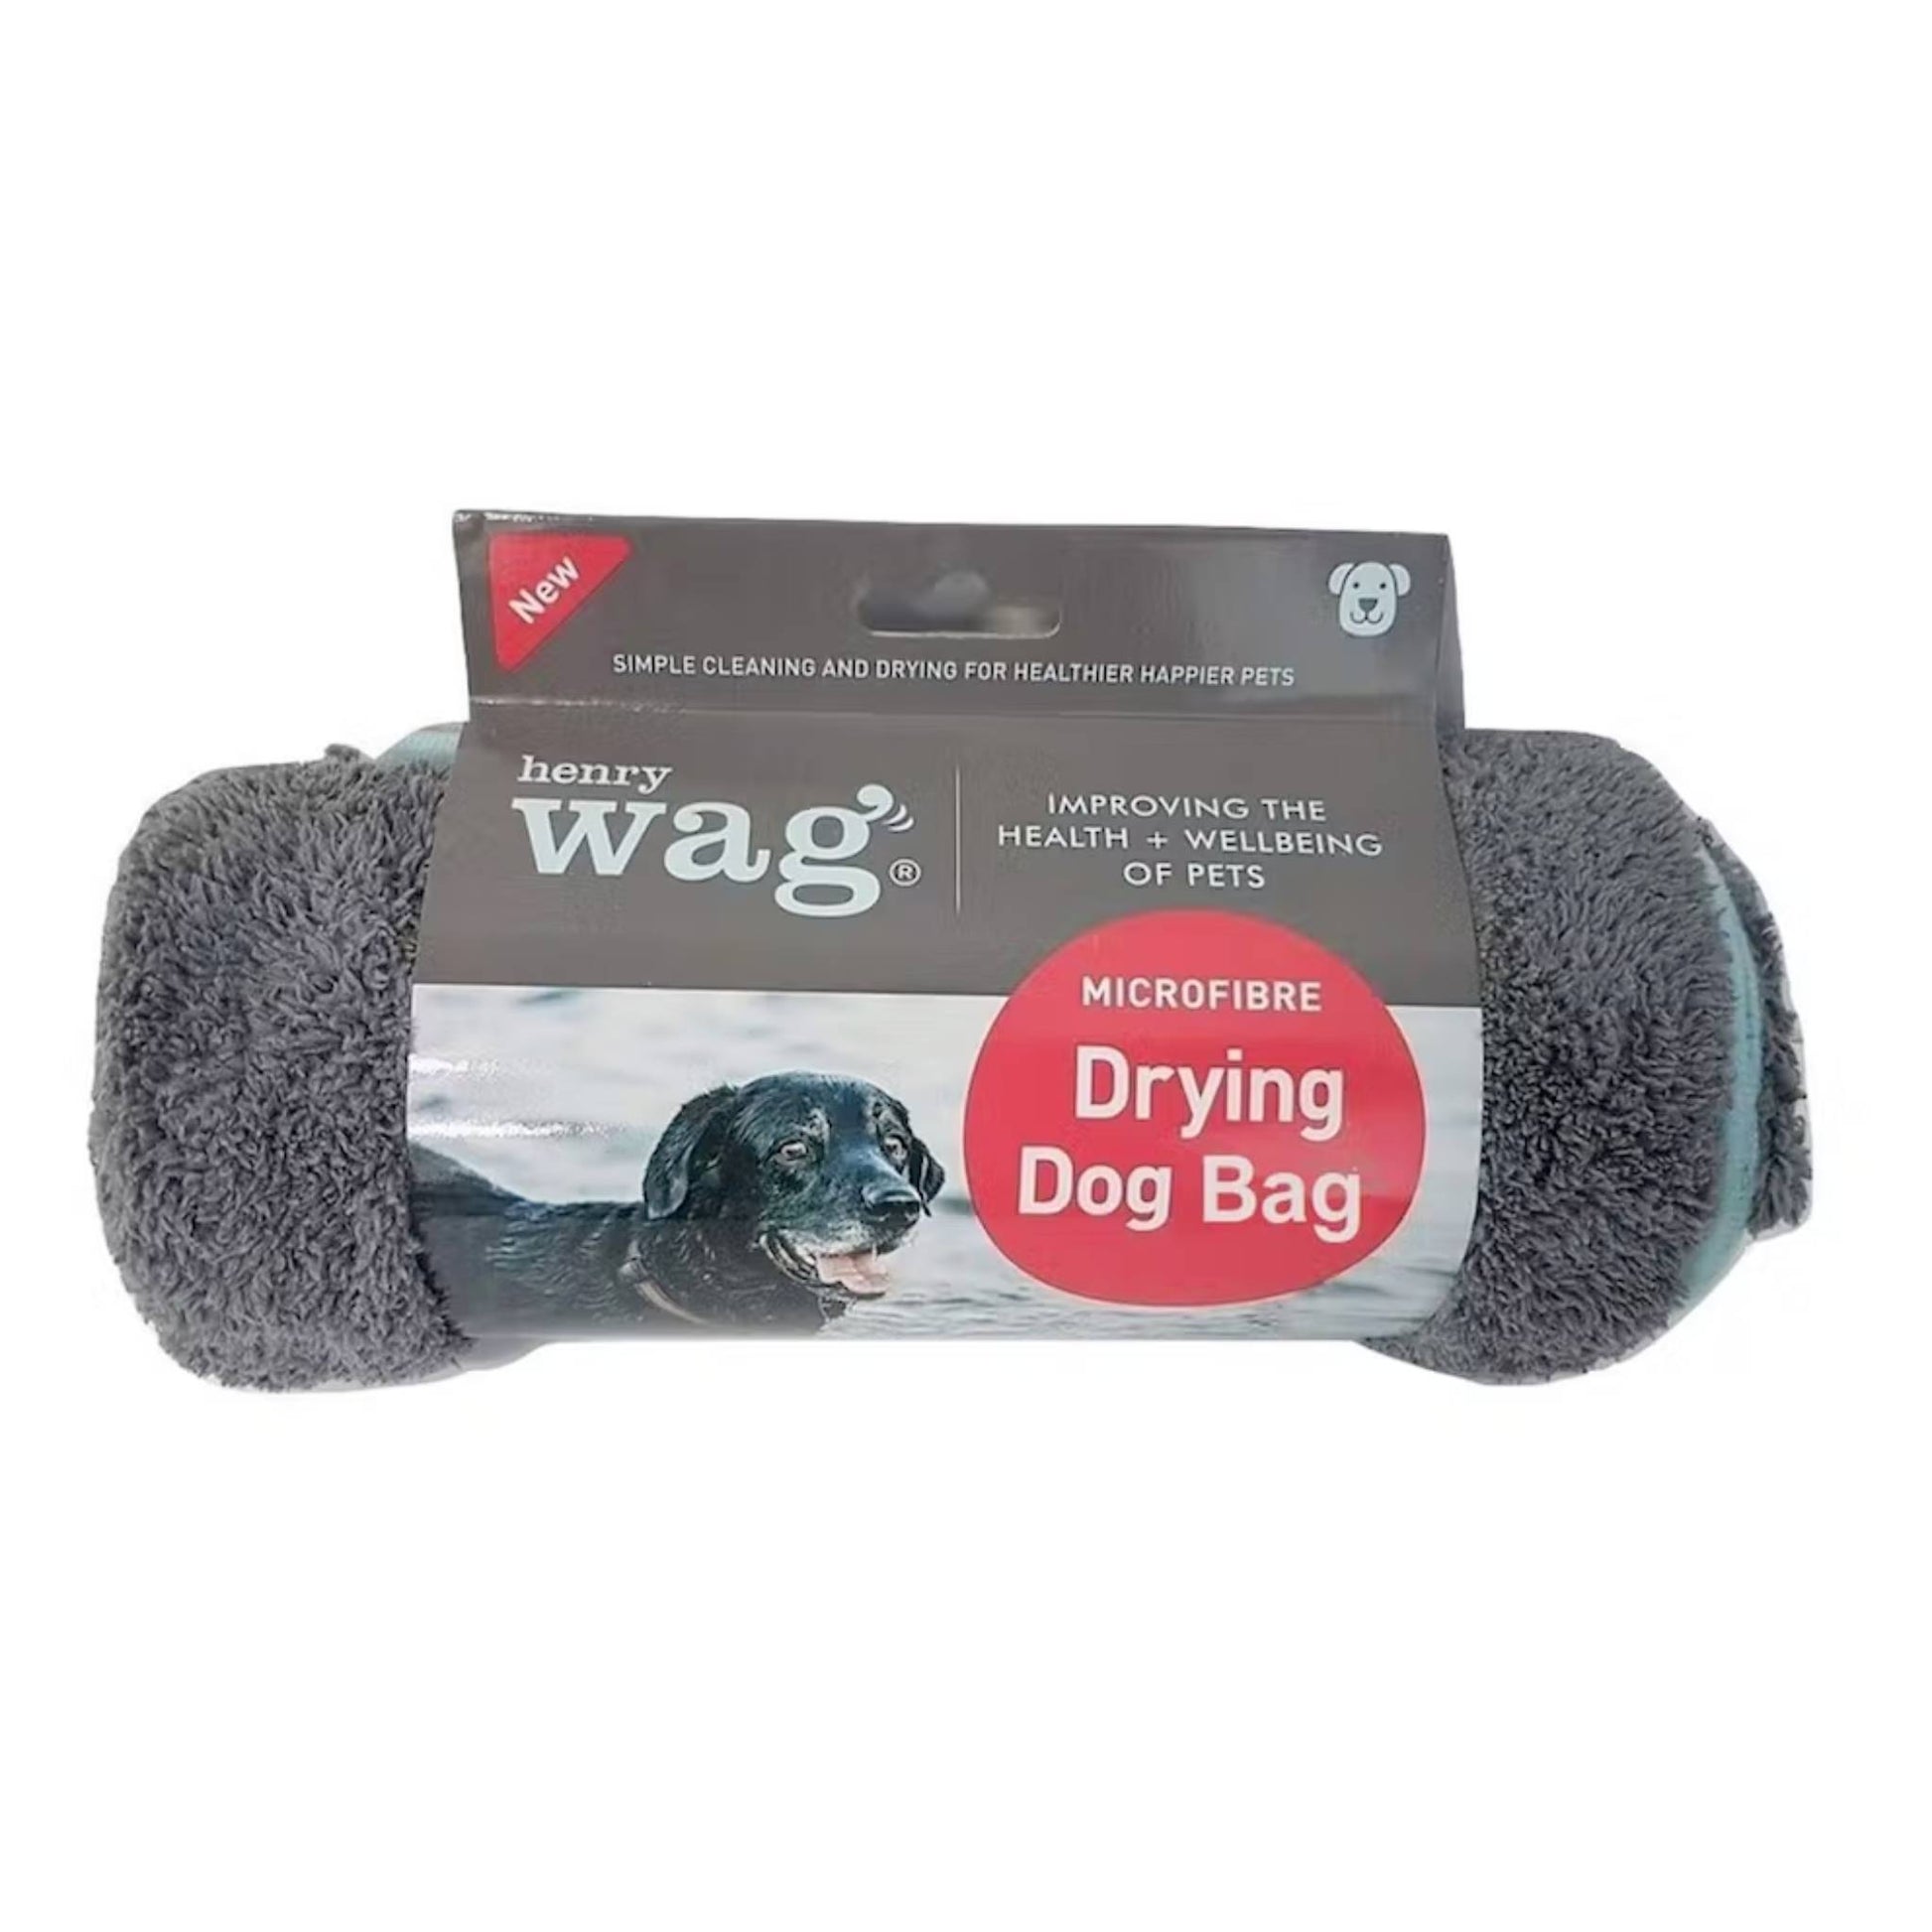 Henry wag dog drying bag